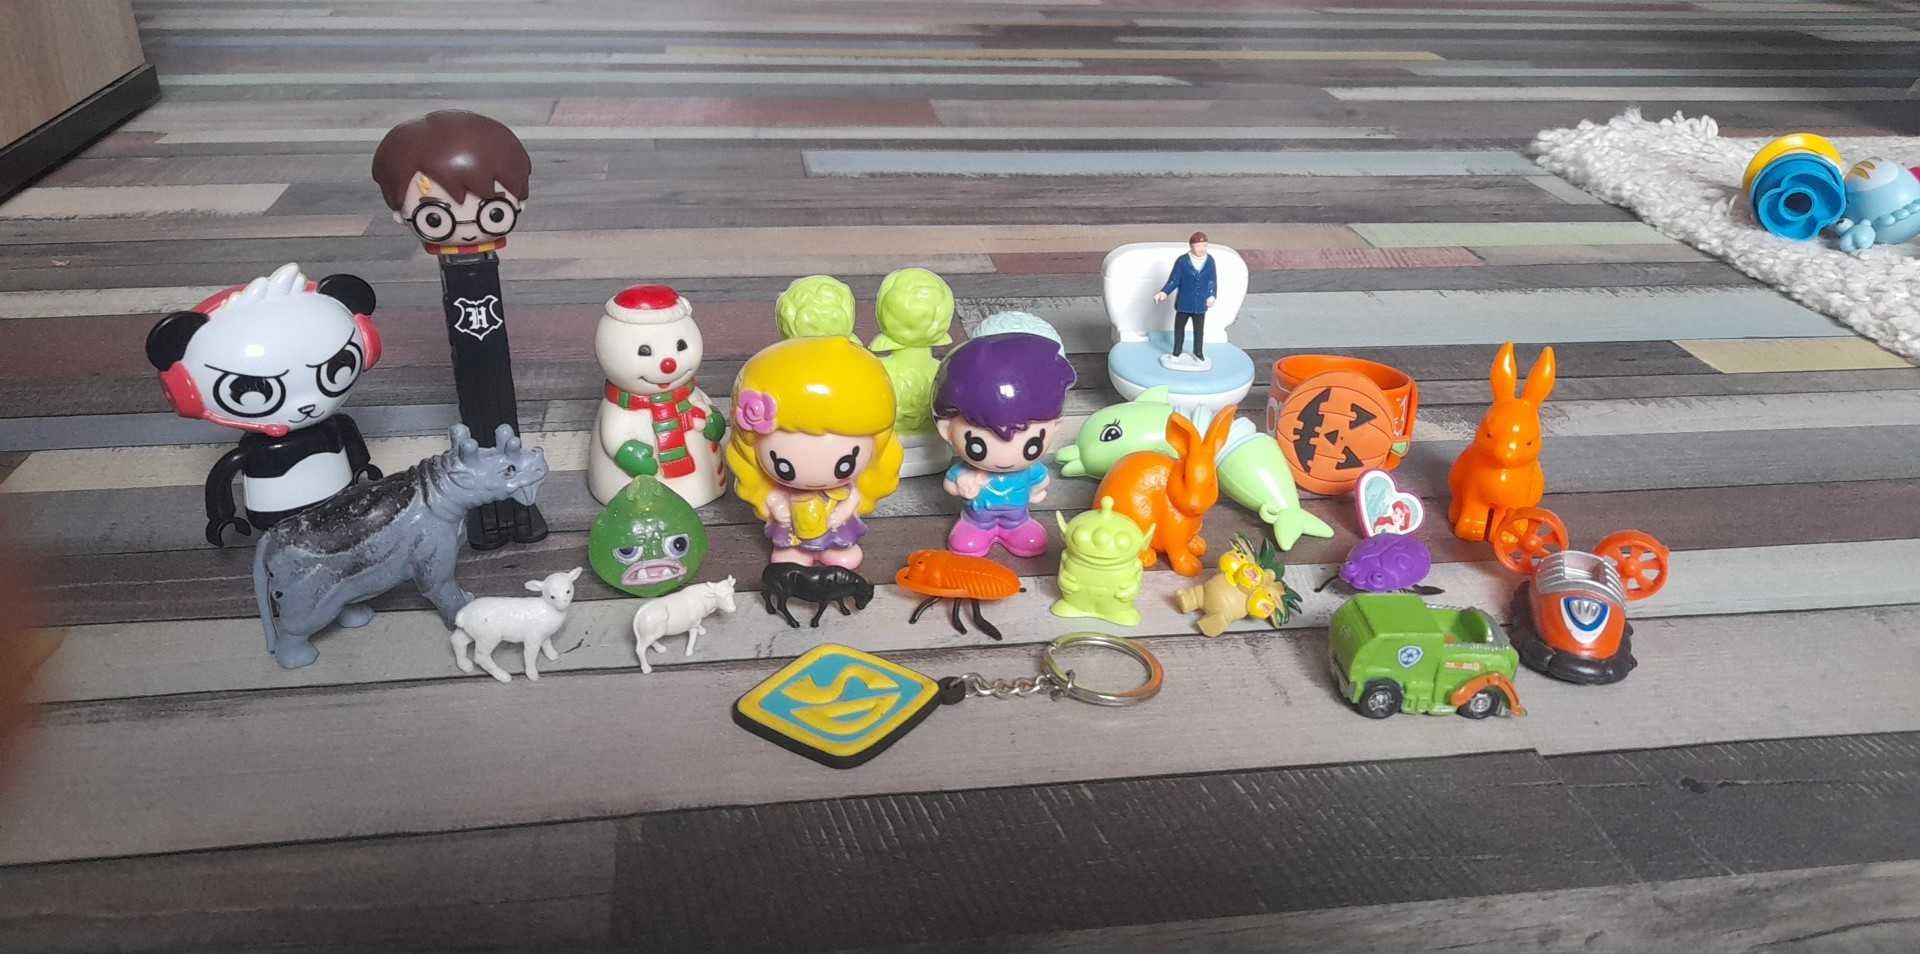 Loturide jucarii si figurine pentru copii si colectionari